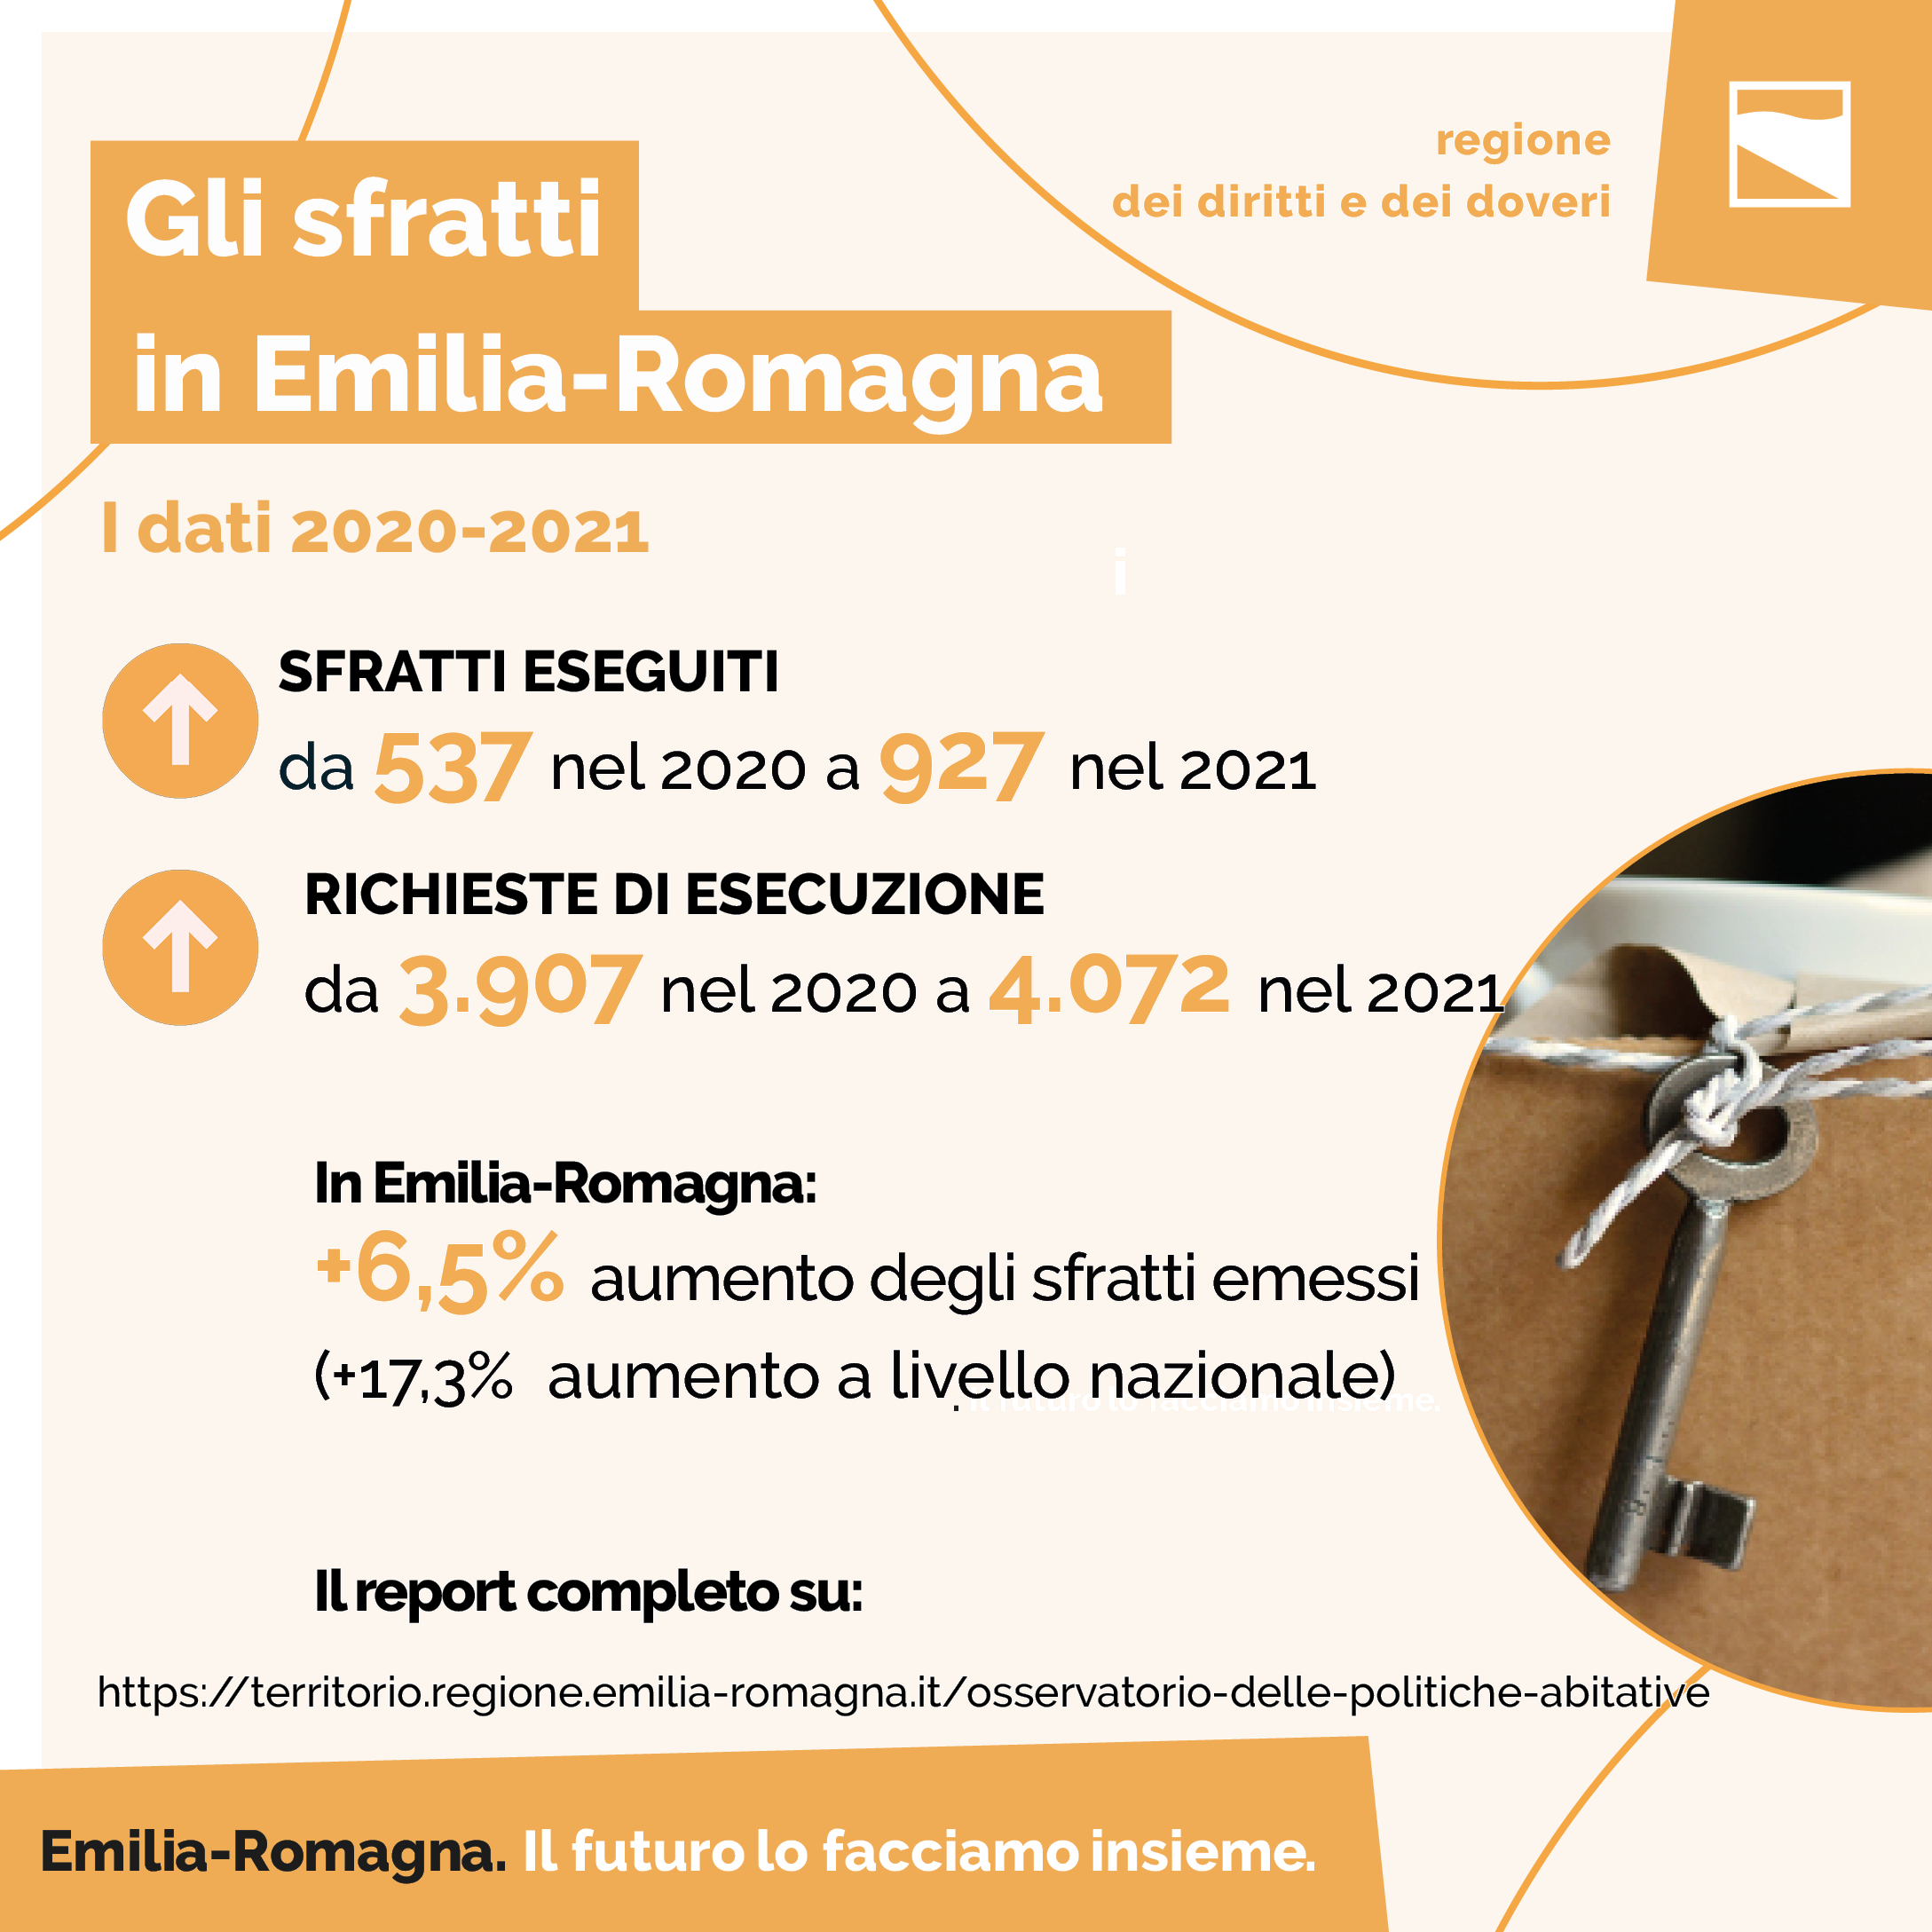 Gli sfratti in Emilia-Romagna